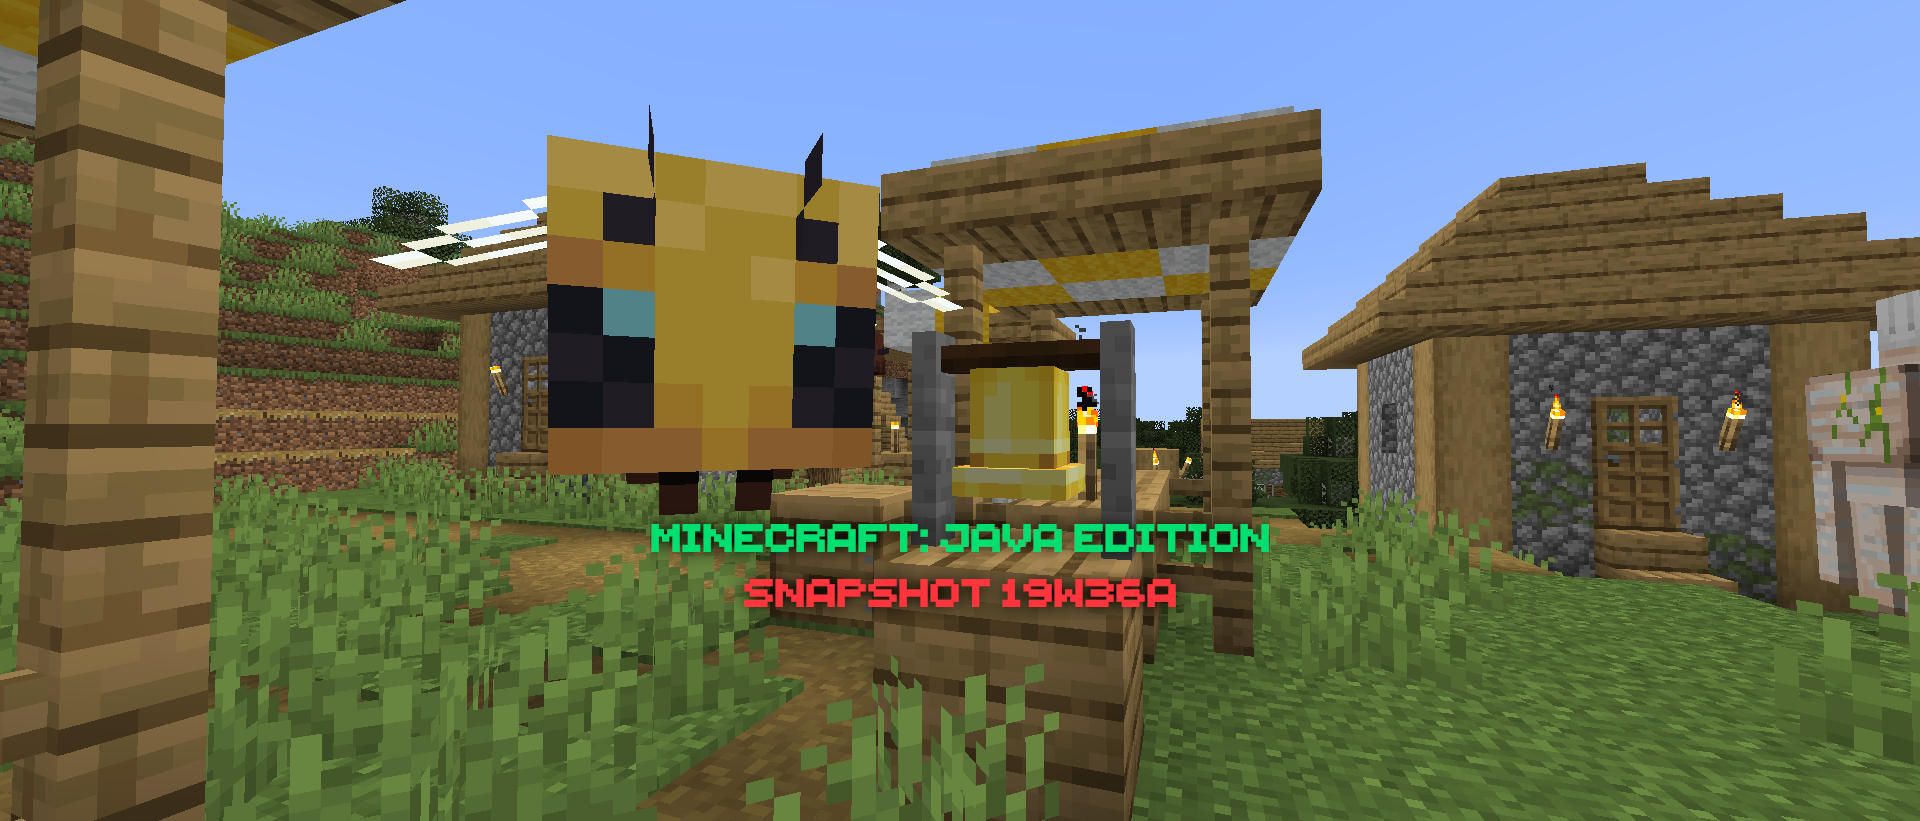 Minecraft Snapshot 19w36a